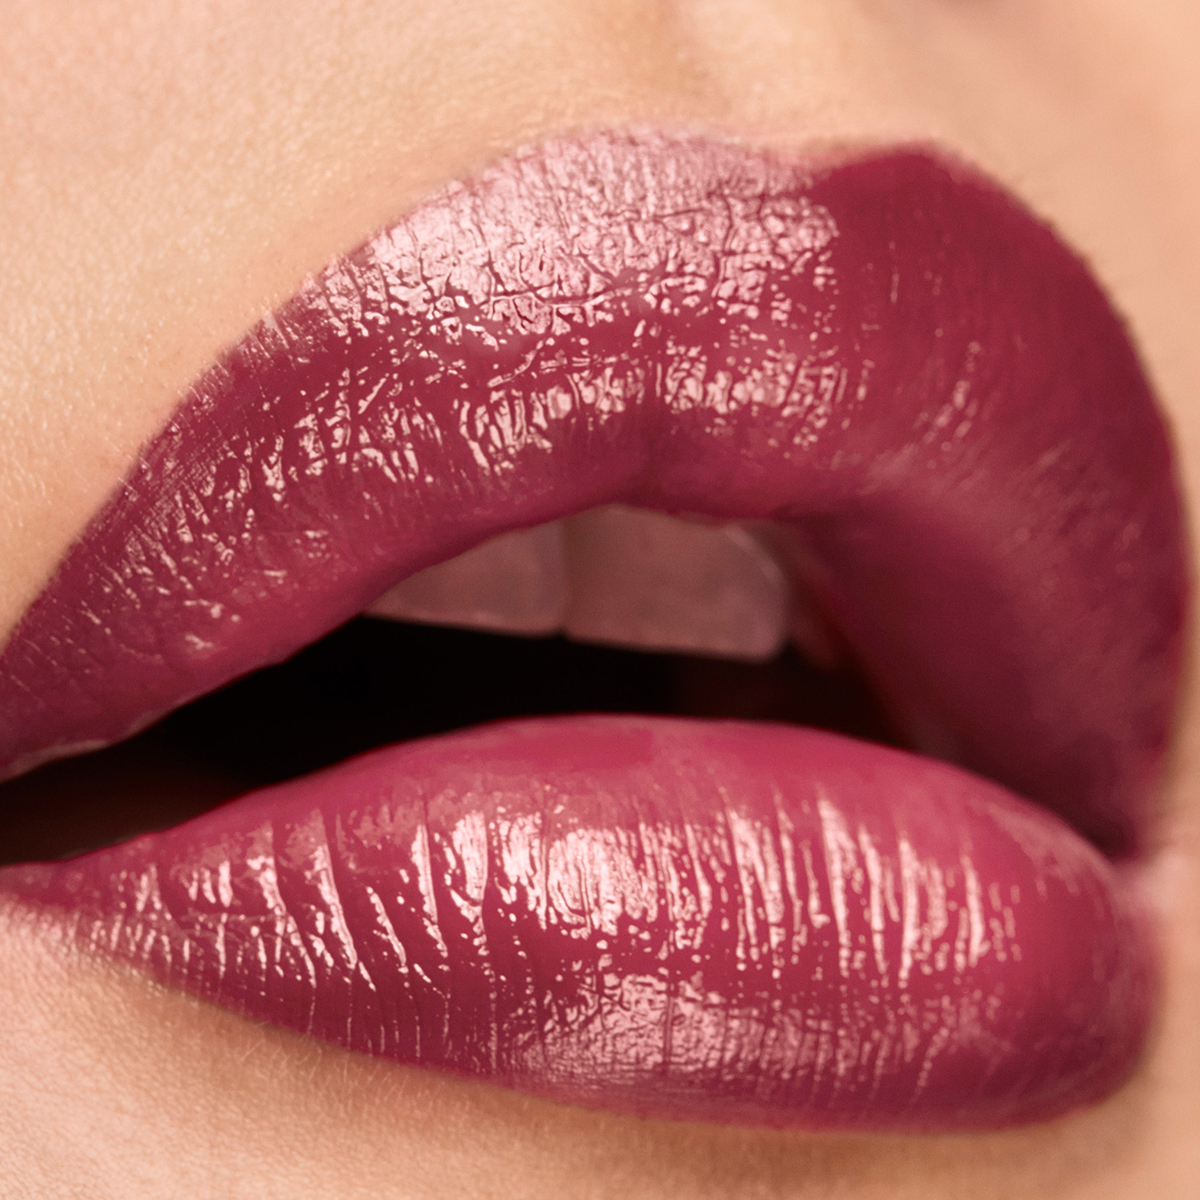 Elizabeth Arden Lip Color Lipstick